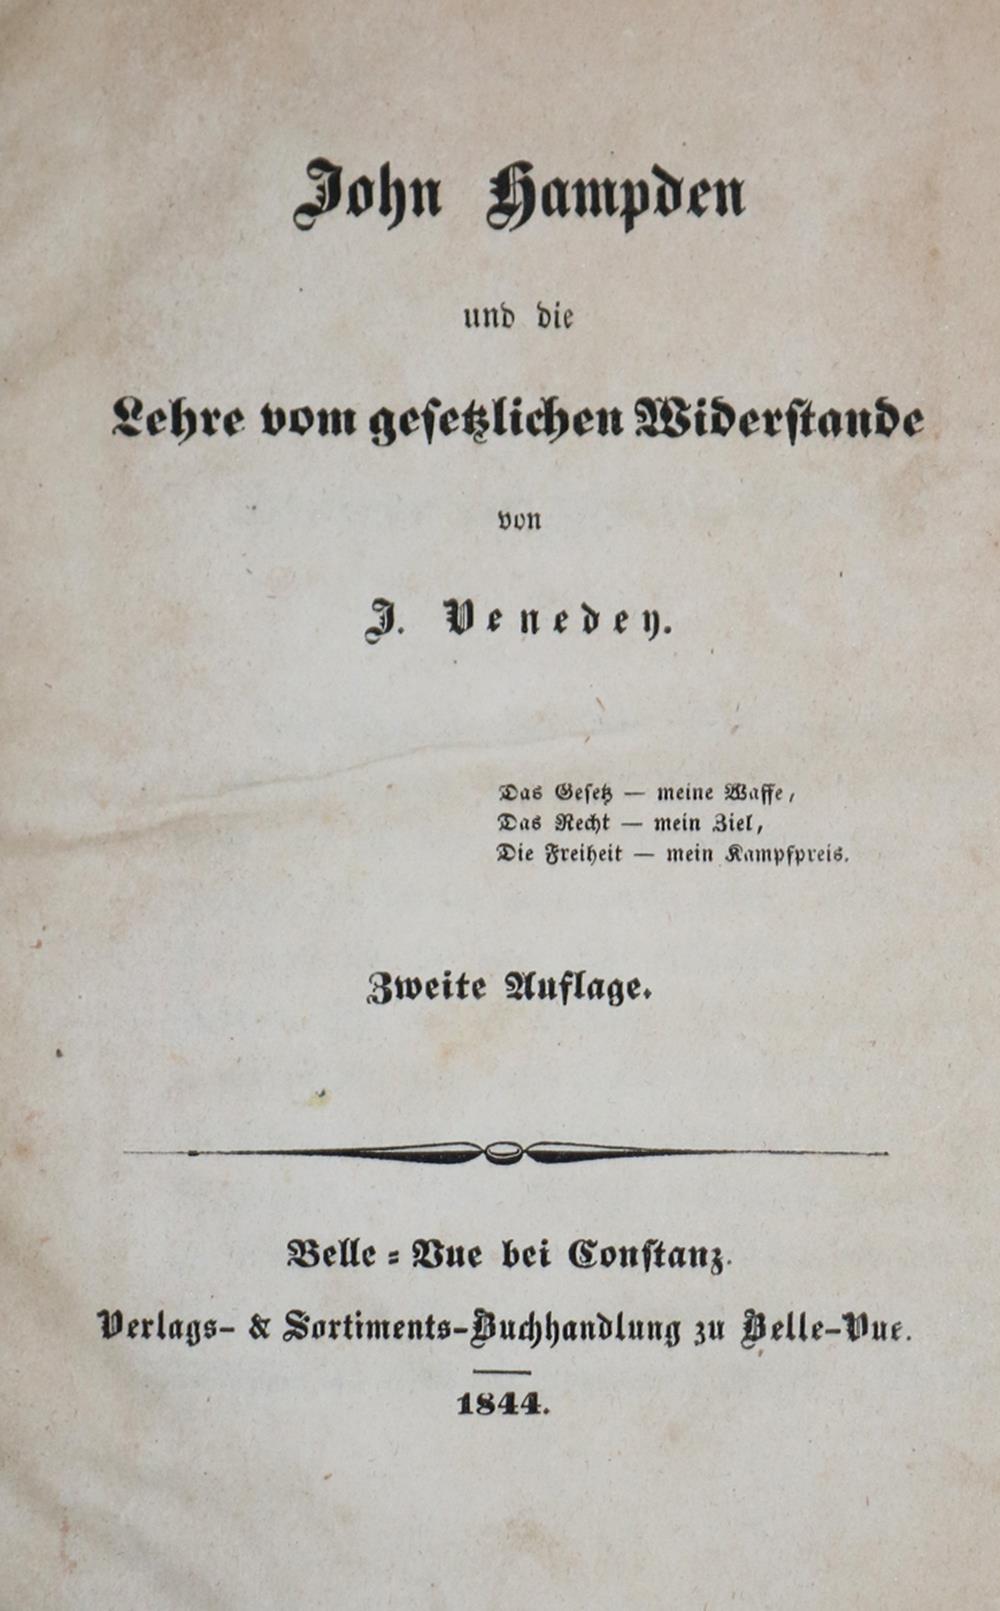 Venedey,J.John Hampden und die Lehre vom gesetzlichen Widerstande. 2. Aufl. Konstanz, Belle-Vue